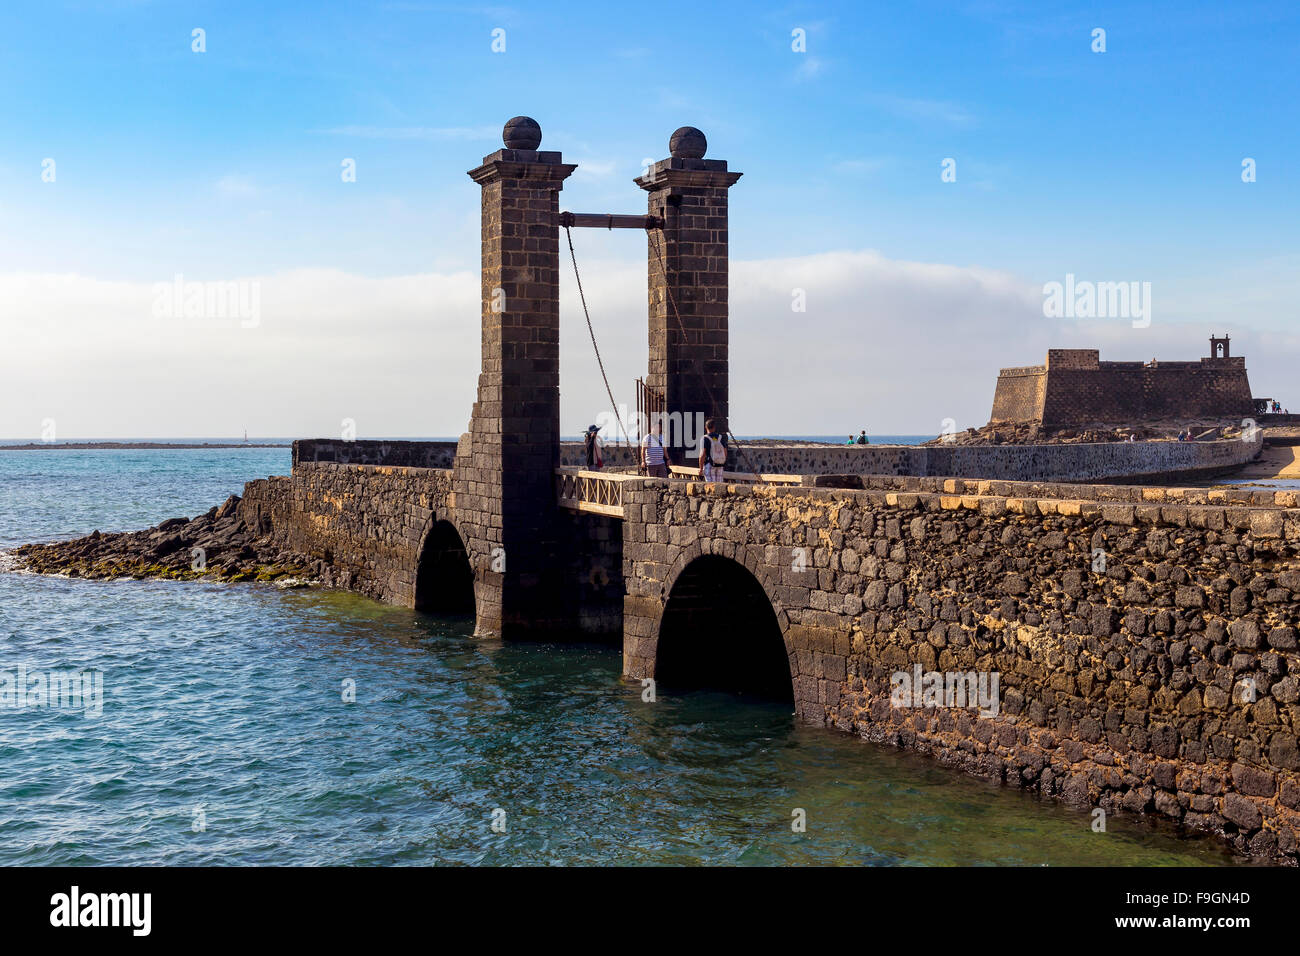 Puente de las Bolas, drawbridge in front of the fort, Castillo de San Gabriel, Arrecife, Lanzarote, Canary Islands, Spain Stock Photo